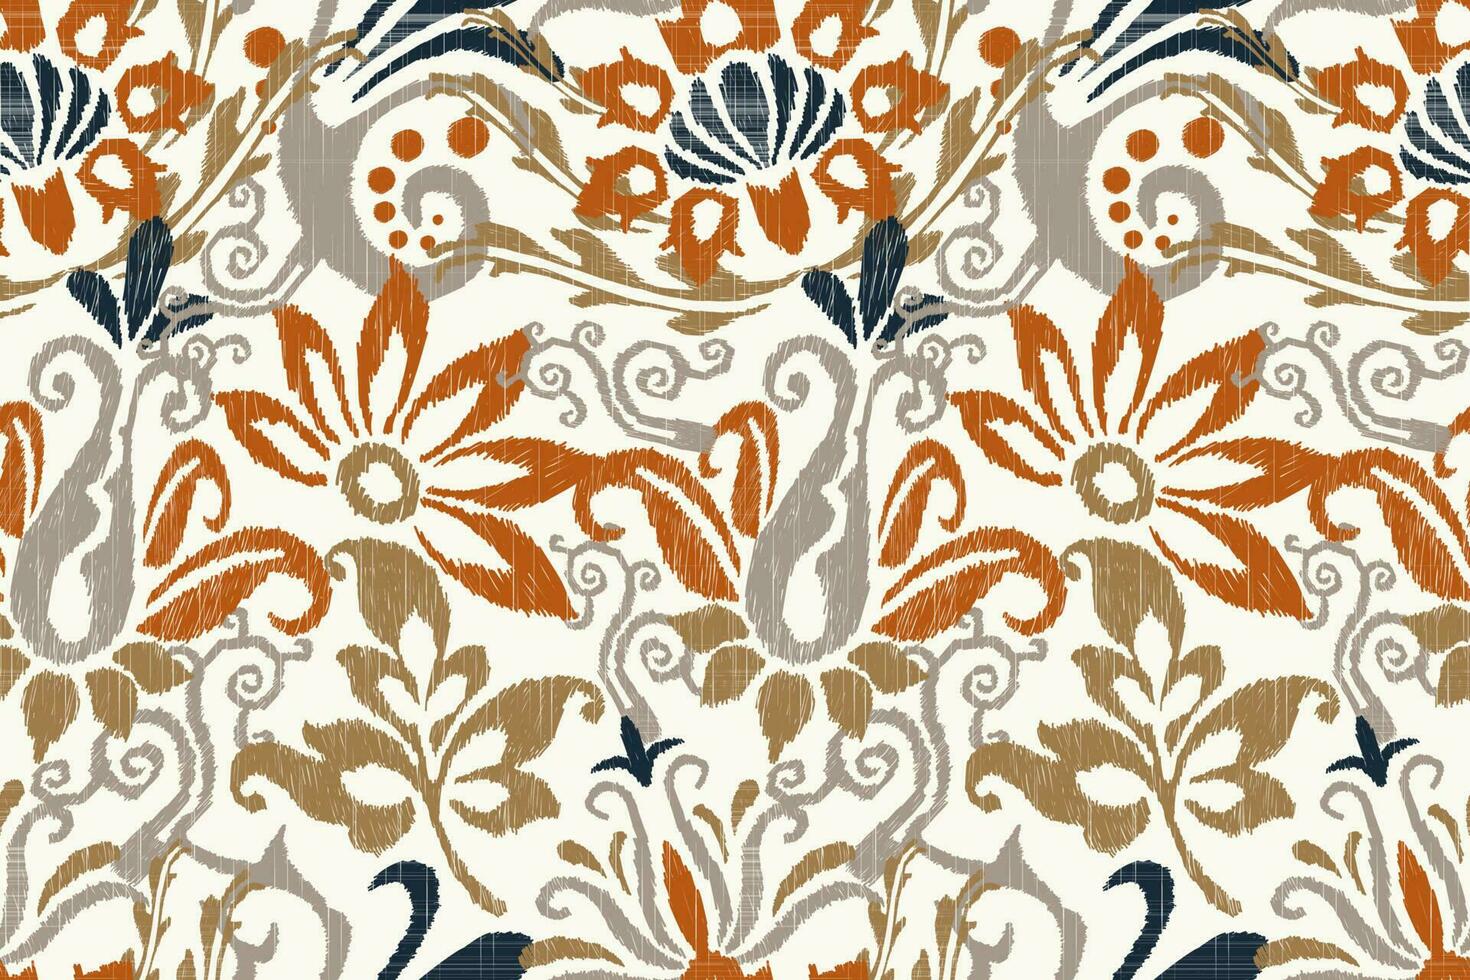 ikat blommig paisley broderi på vit bakgrund.ikat etnisk orientalisk sömlös mönster traditionell.aztec stil abstrakt vektor illustration.design för textur, tyg, kläder, inslagning, dekoration.